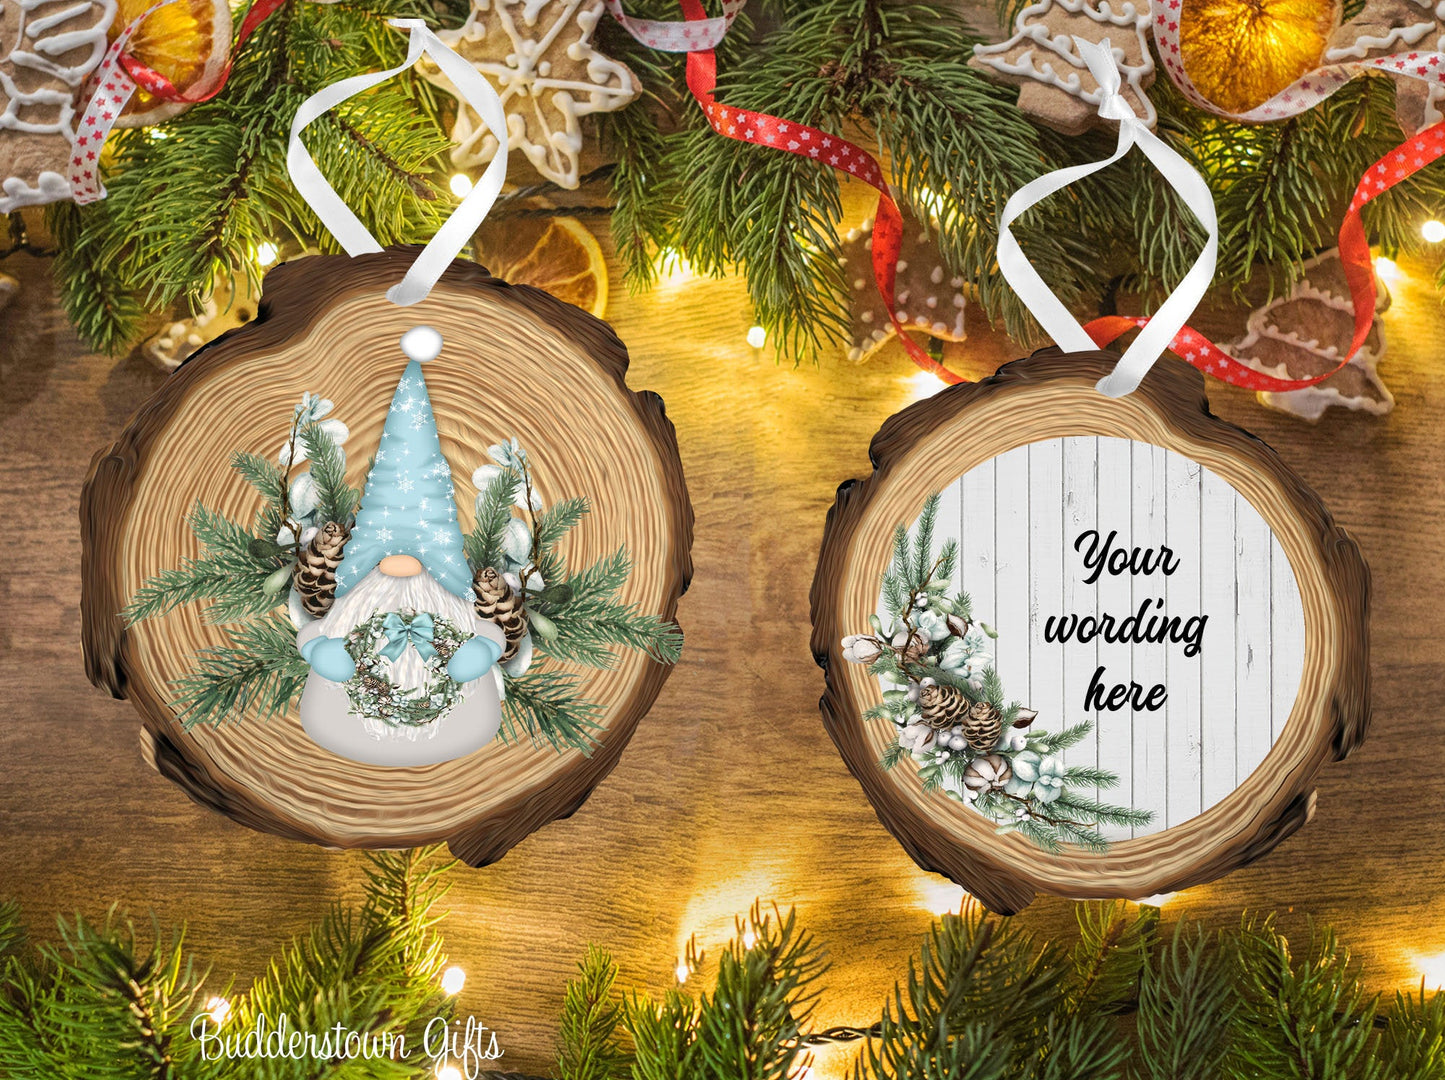 Snow and Pine Cone Gnome - Personalized Ornament - gnome ornament -